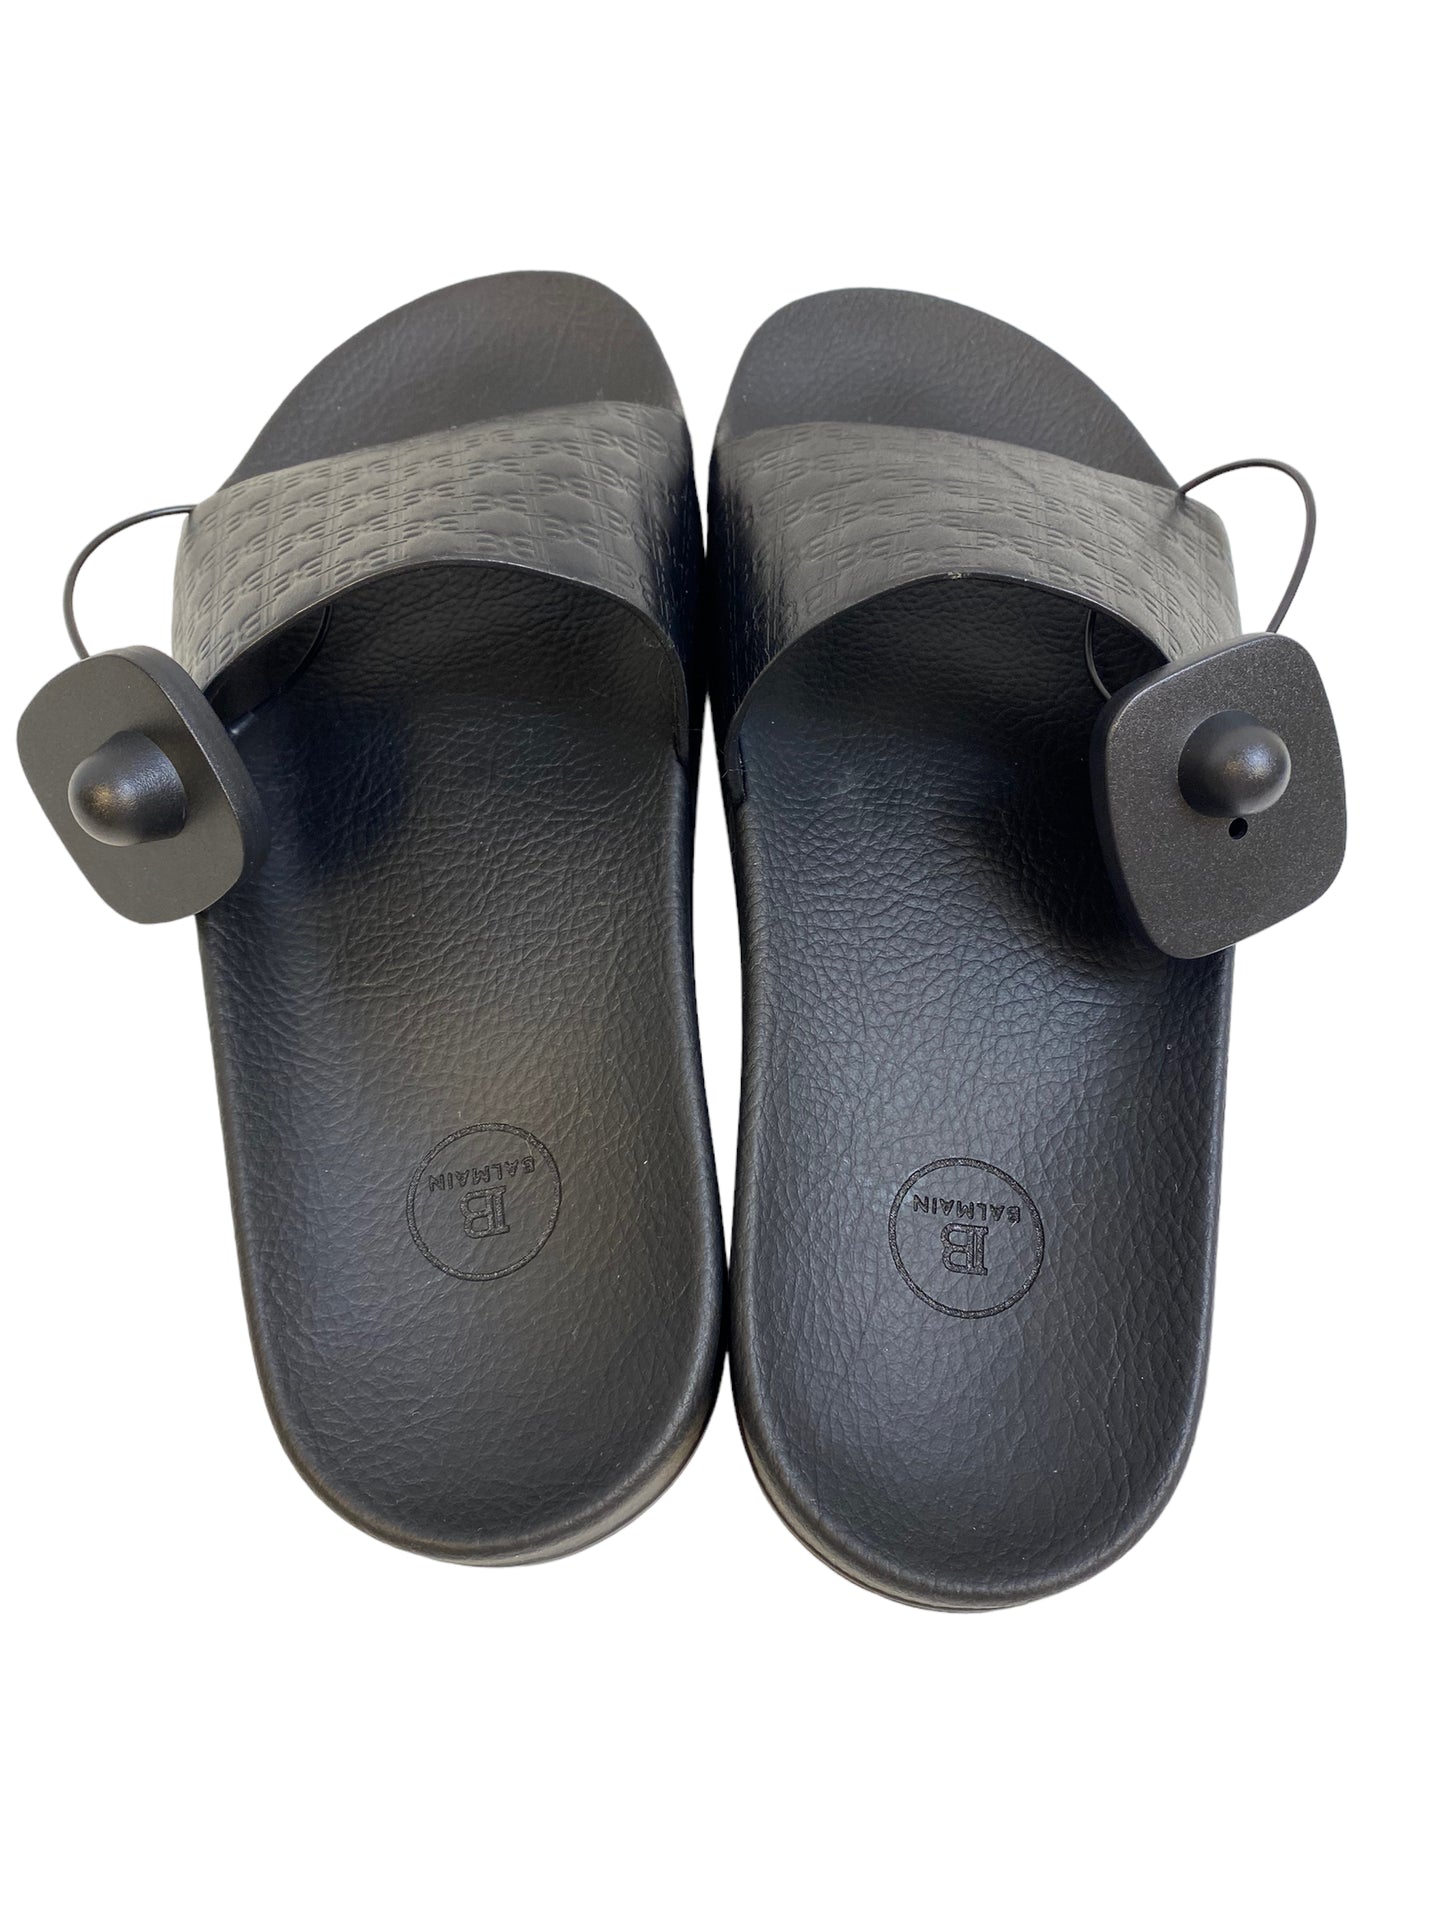 Sandals Luxury Designer By Balmain  Size: 8.5